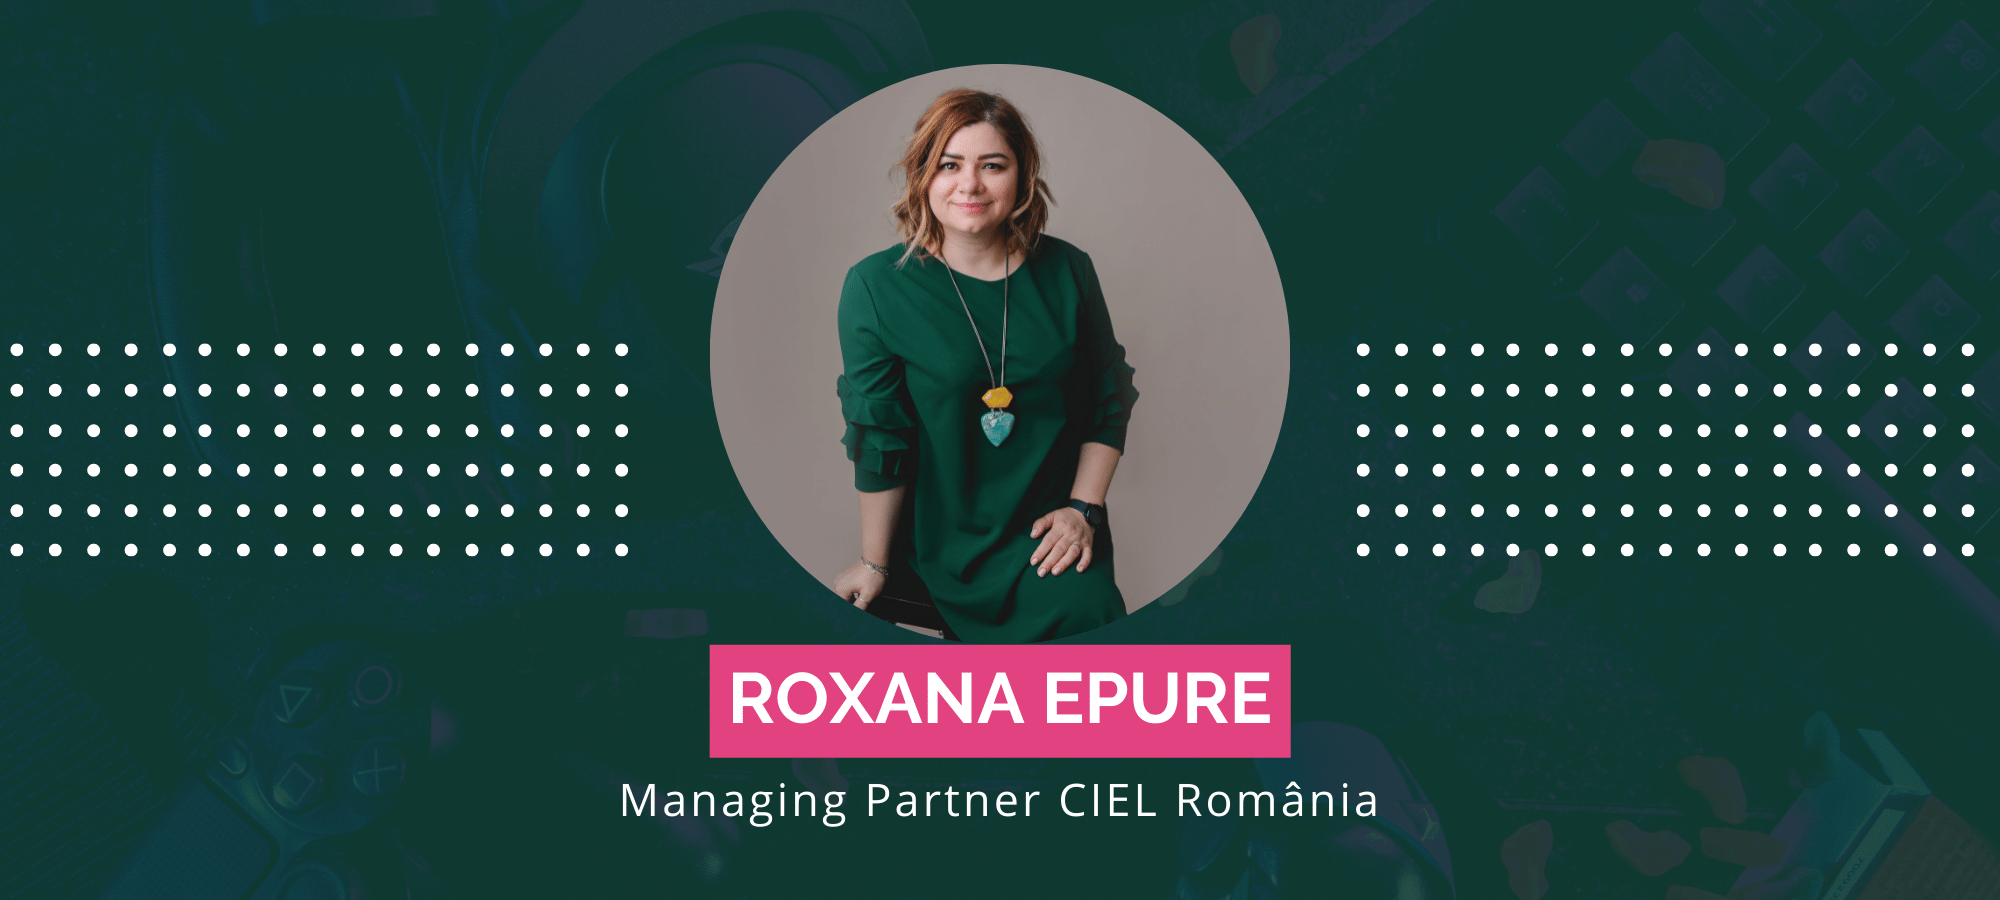 CIEL România - creștere de 15% a cifrei de afaceri în 2021, an în care și-a consolidat poziția pe piața de inteligență artificială